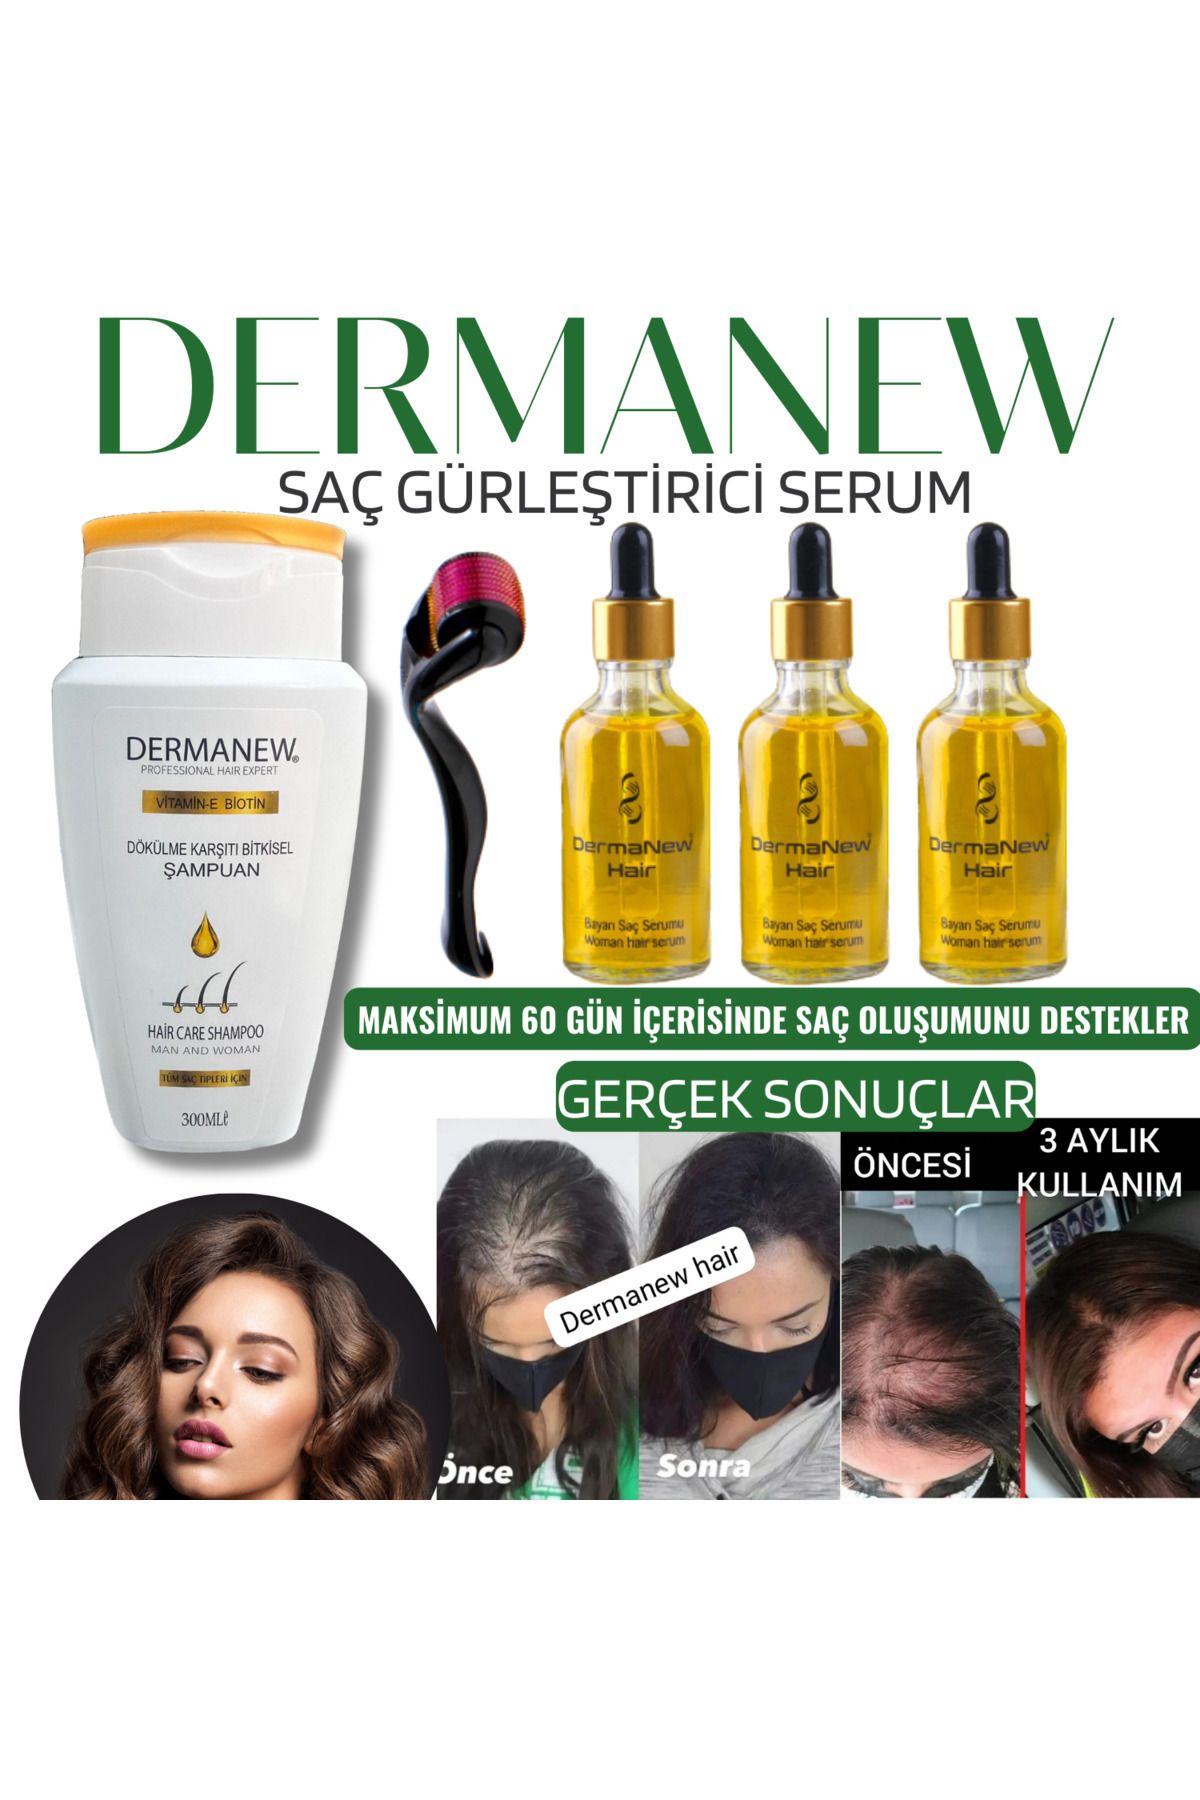 dermanew hair Bayanlara Özel Saç Gürleştirici Serum / 3 Adet Serum 1 Adet Roller Şampuan